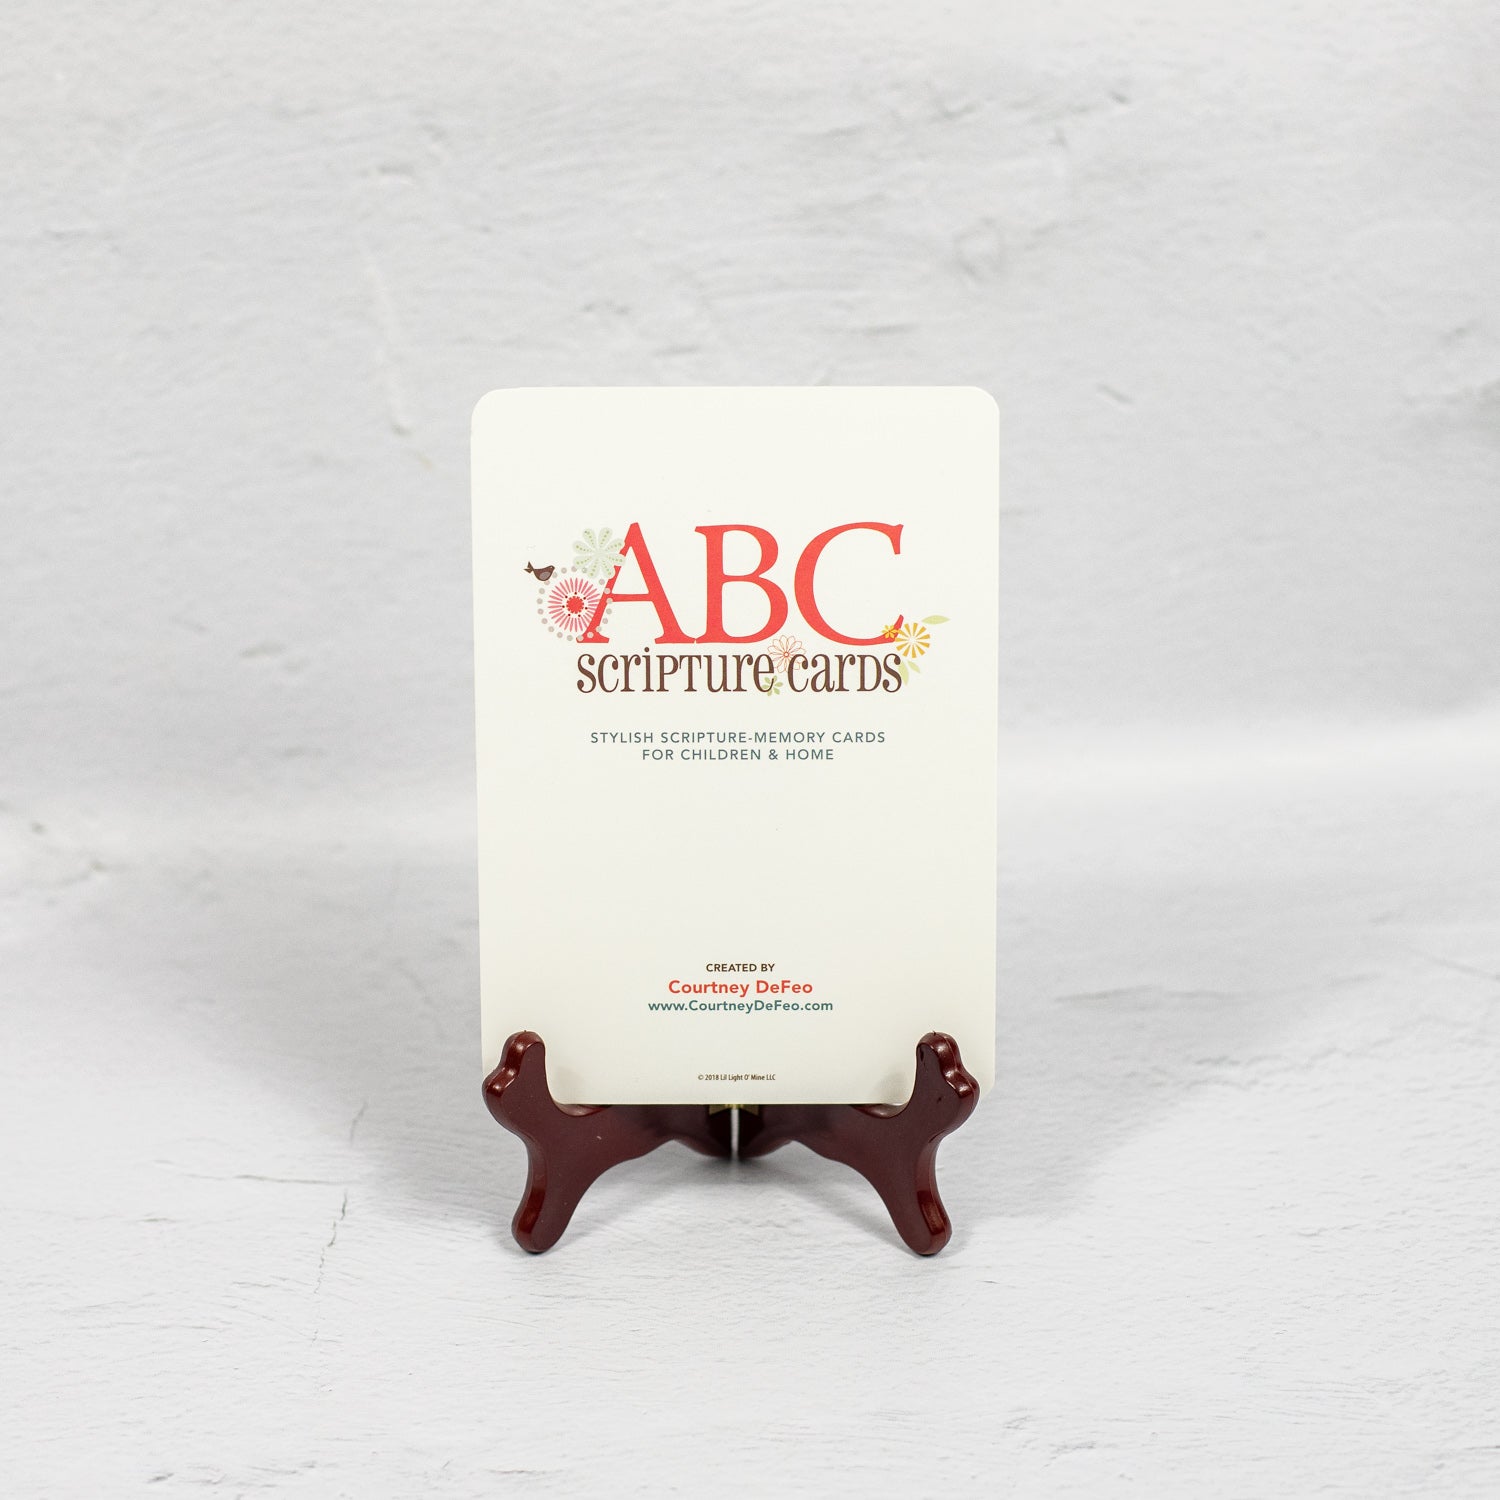 ABC Scripture Cards